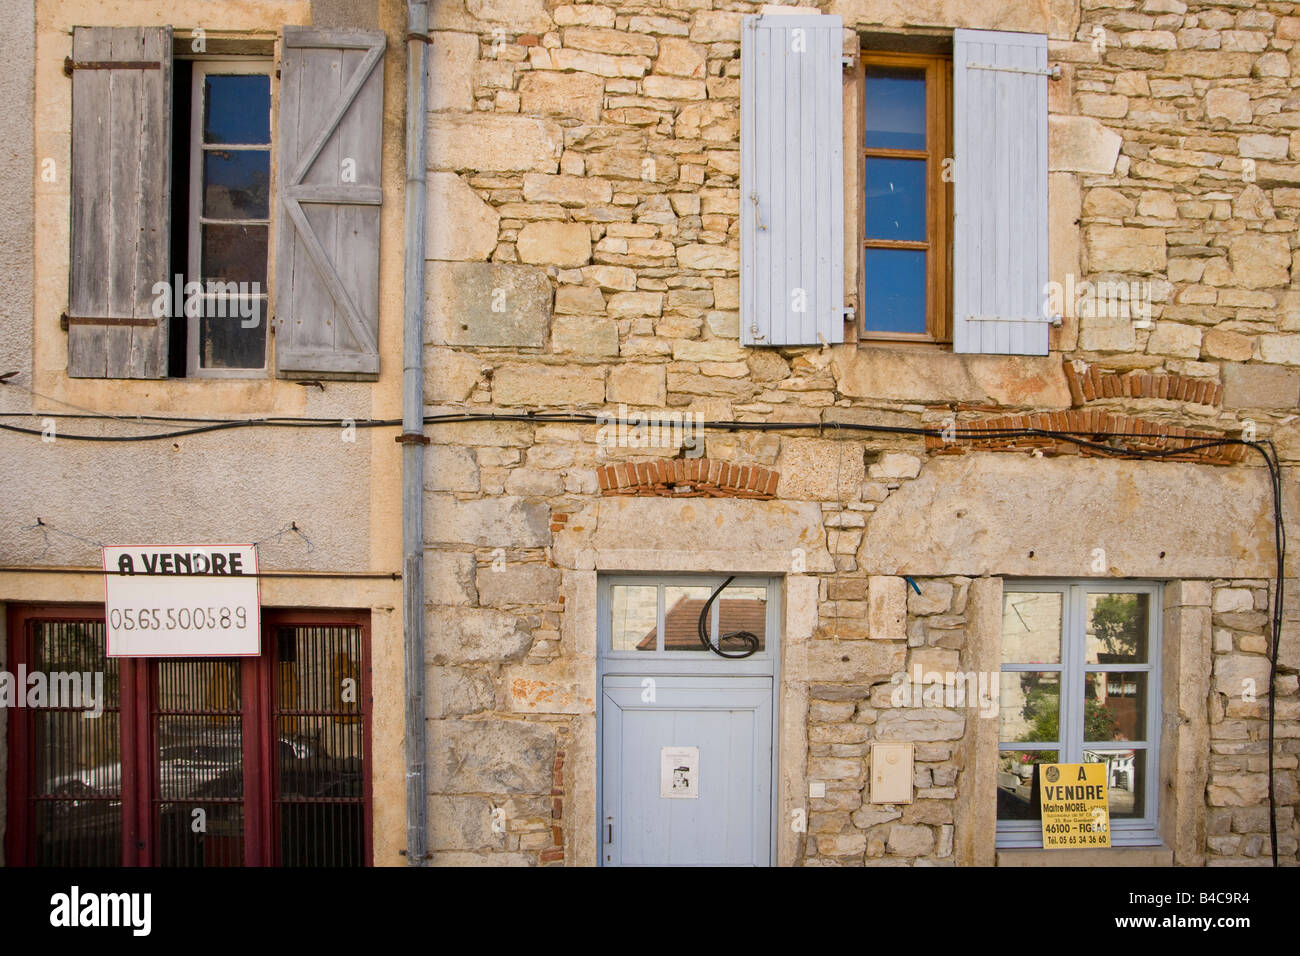 Maisons de village avec les agents immobiliers à vendre signes, Marcilhac-sur-Célé, 46, Lot, Quercy, France, Europe Banque D'Images